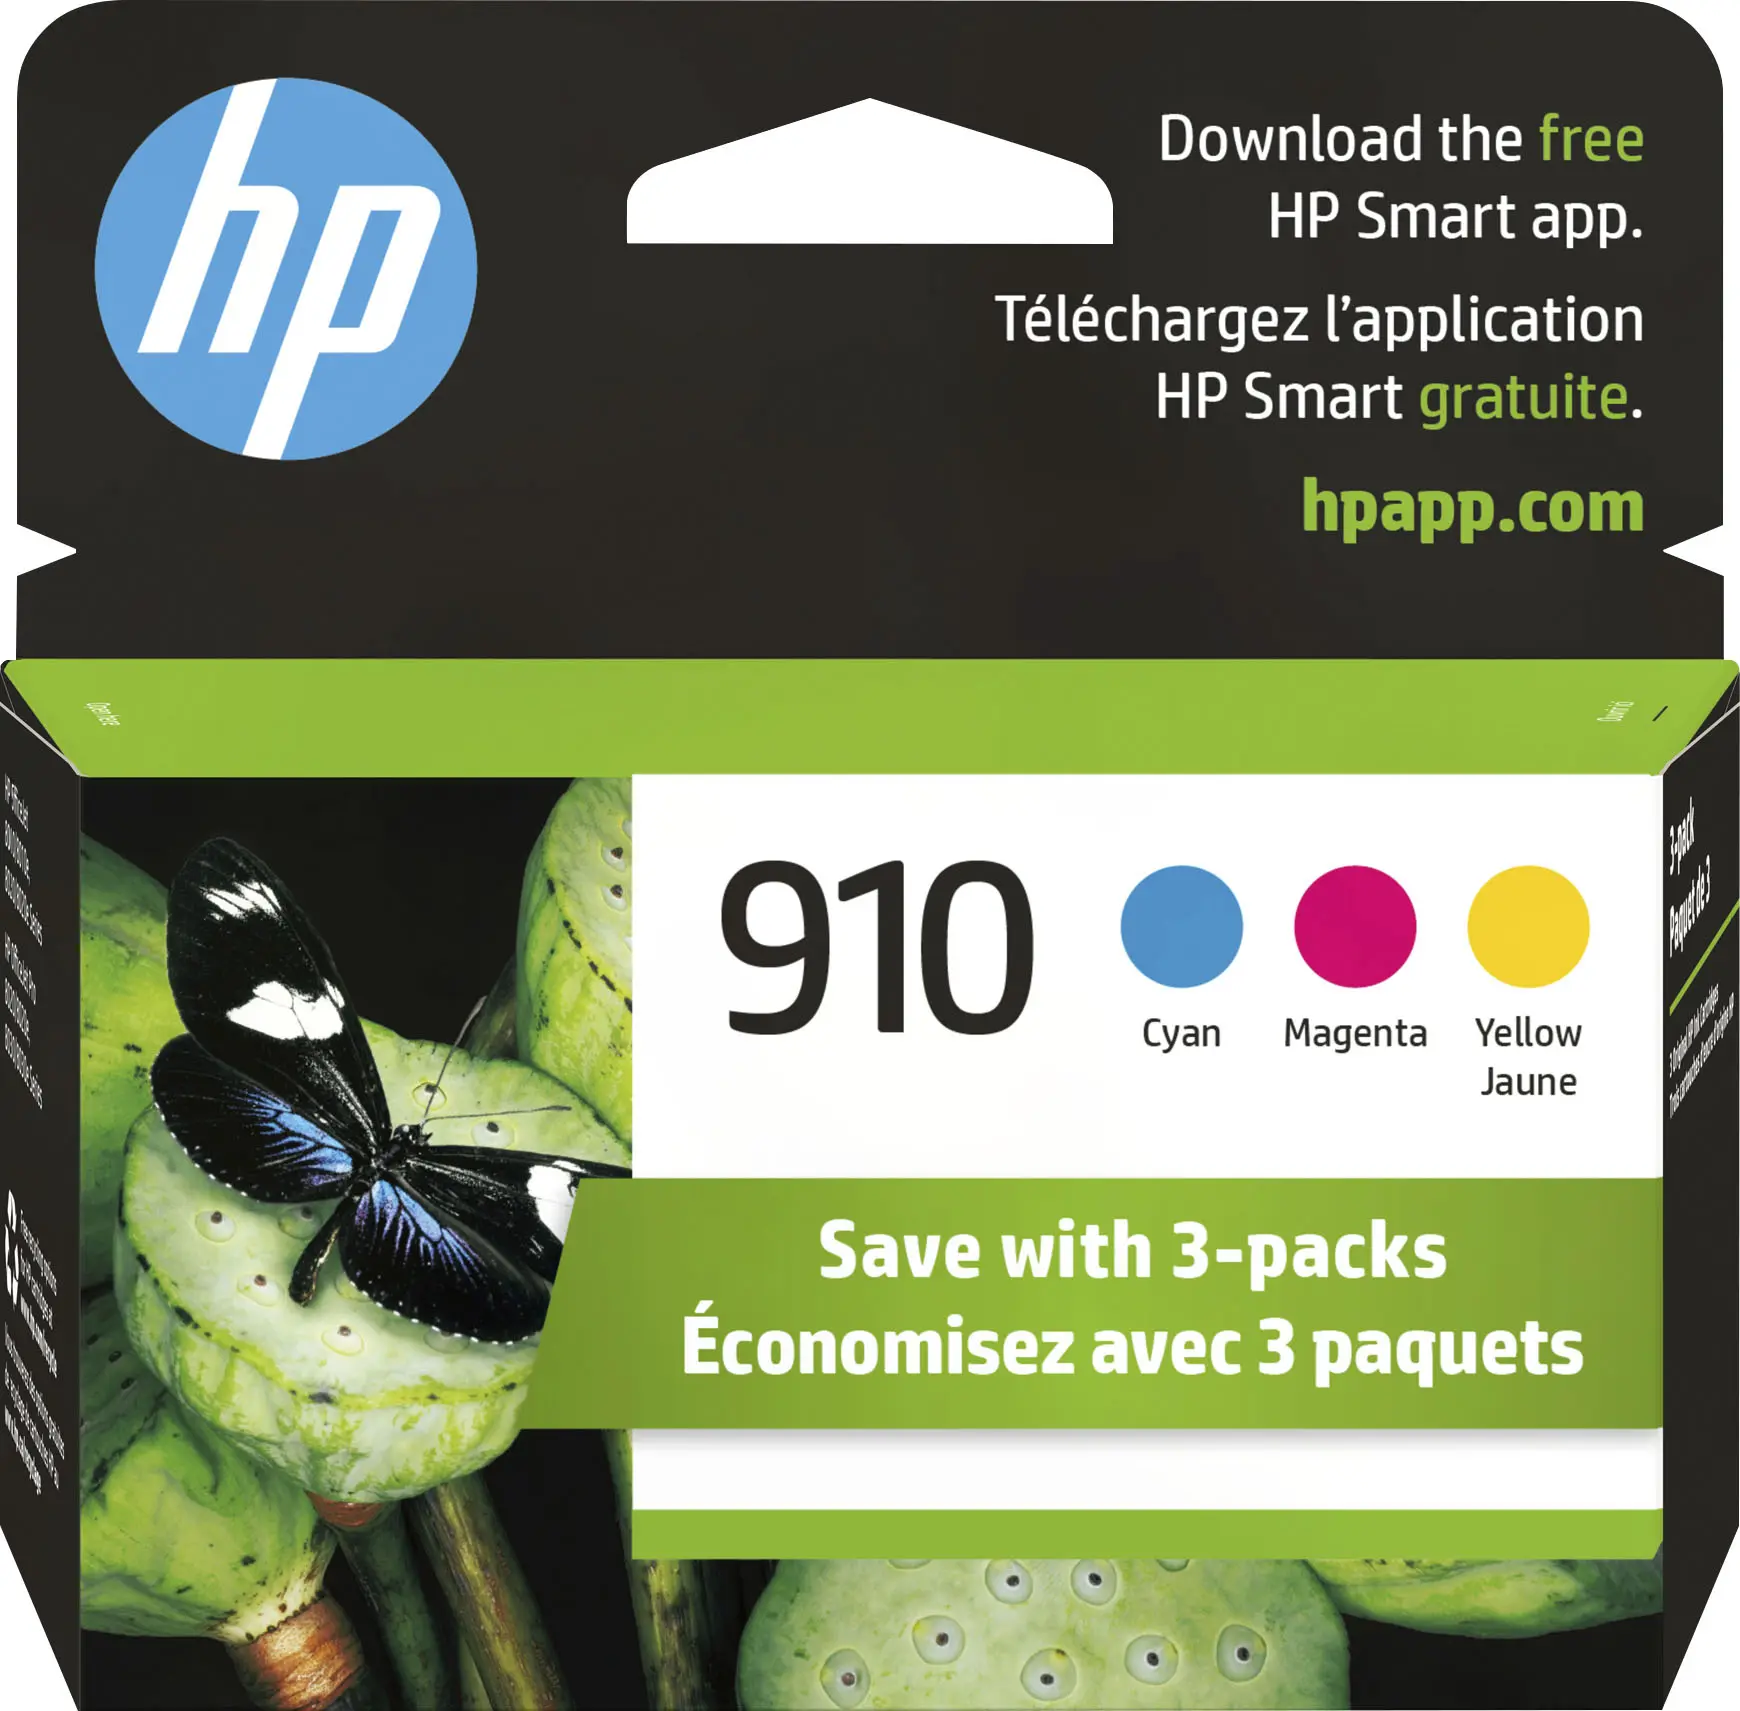 hewlett packard 910 ink cartridges - What printer uses HP 910 ink cartridges